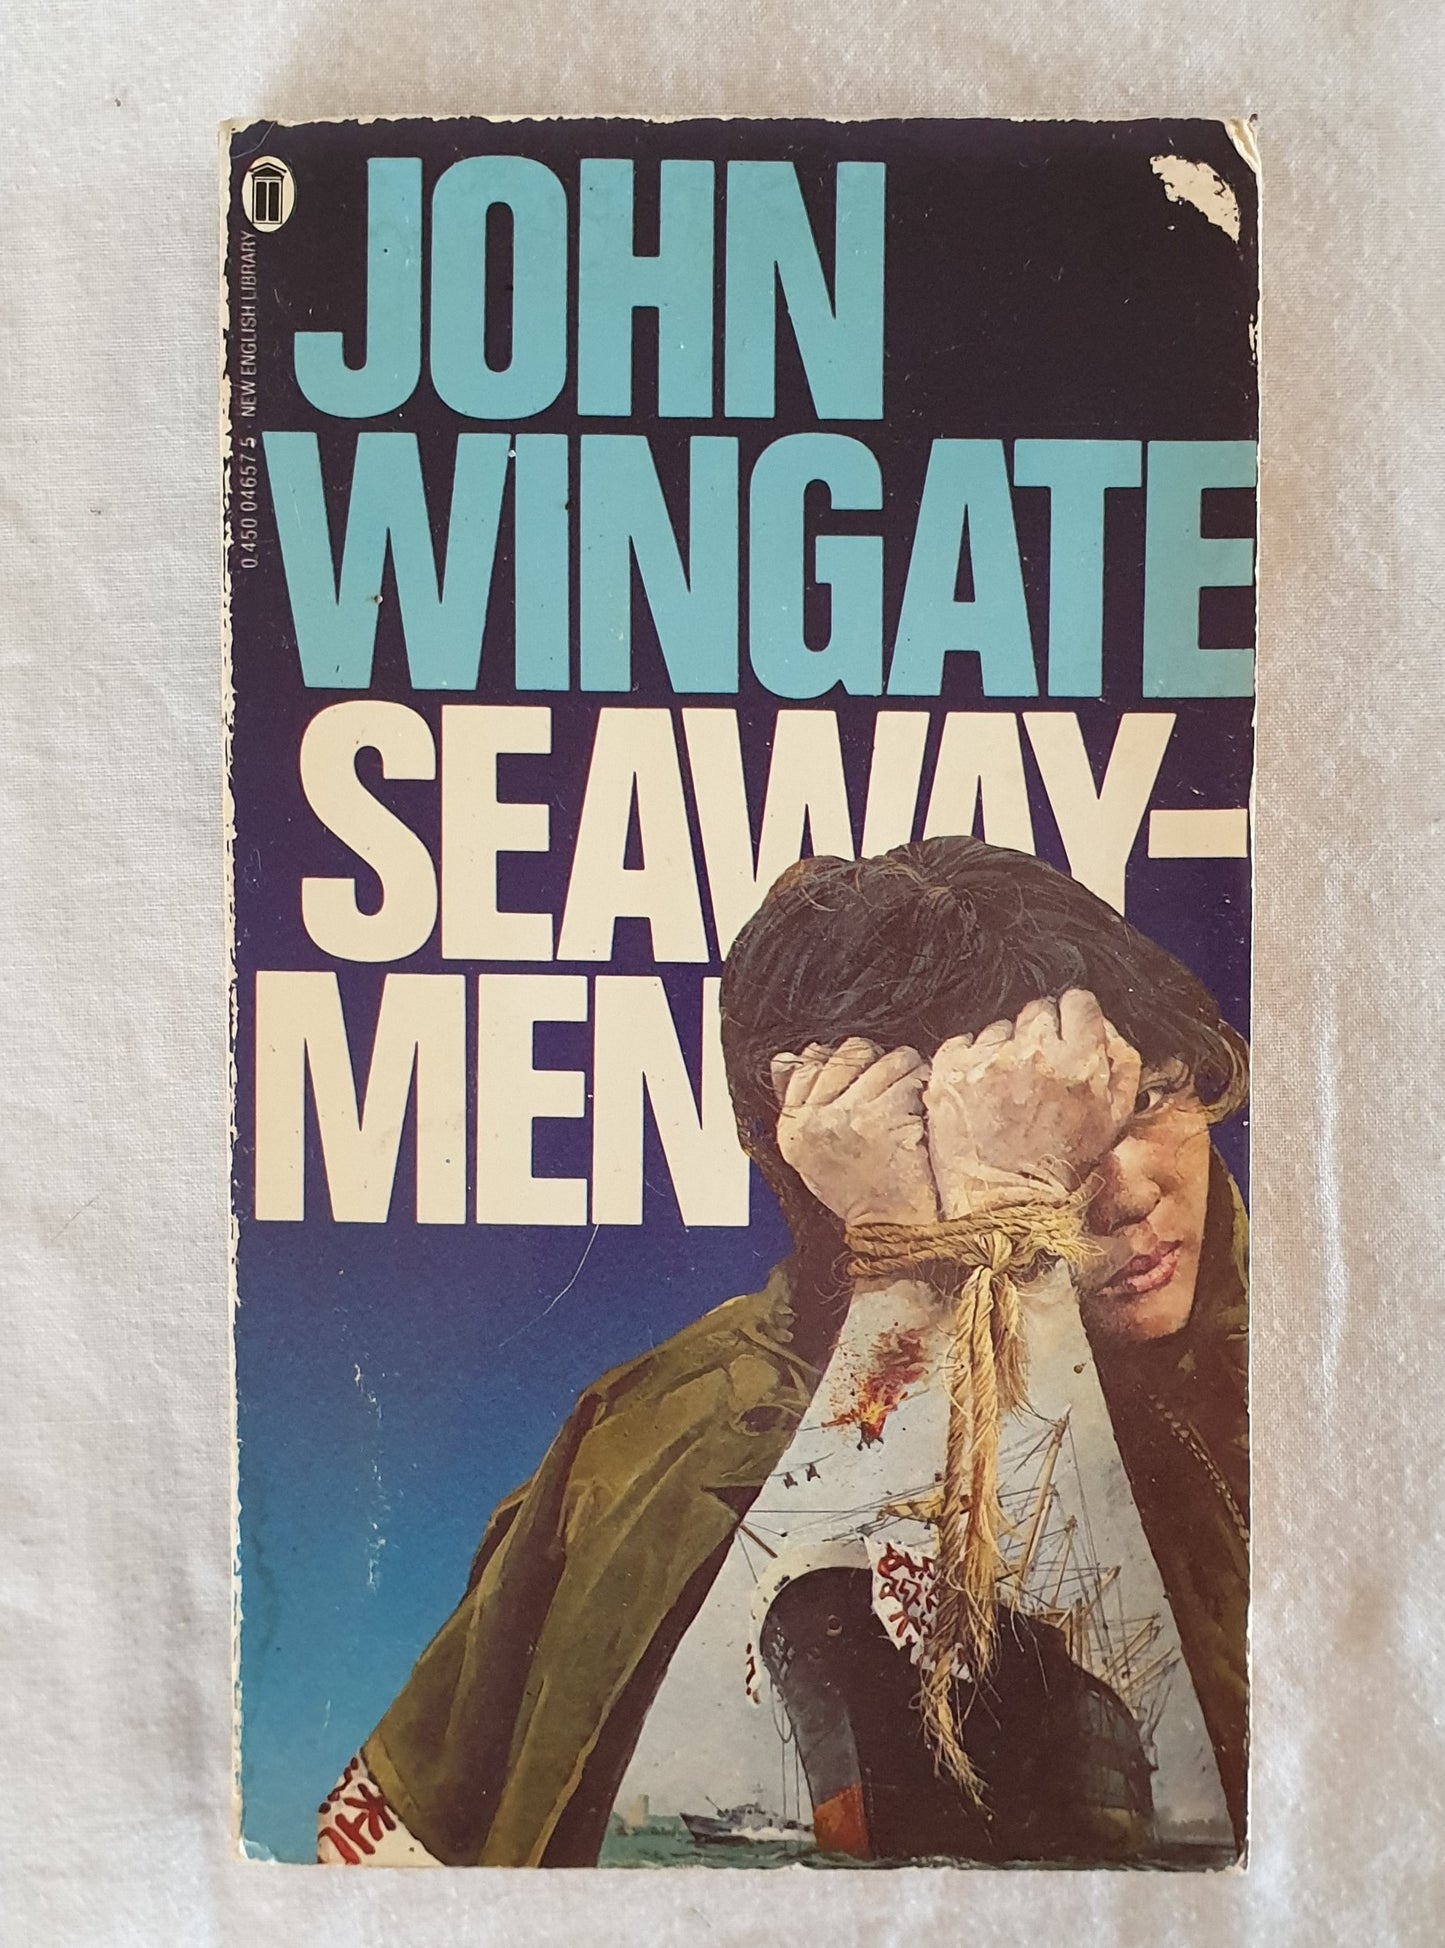 Seawaymen  by John Wingate